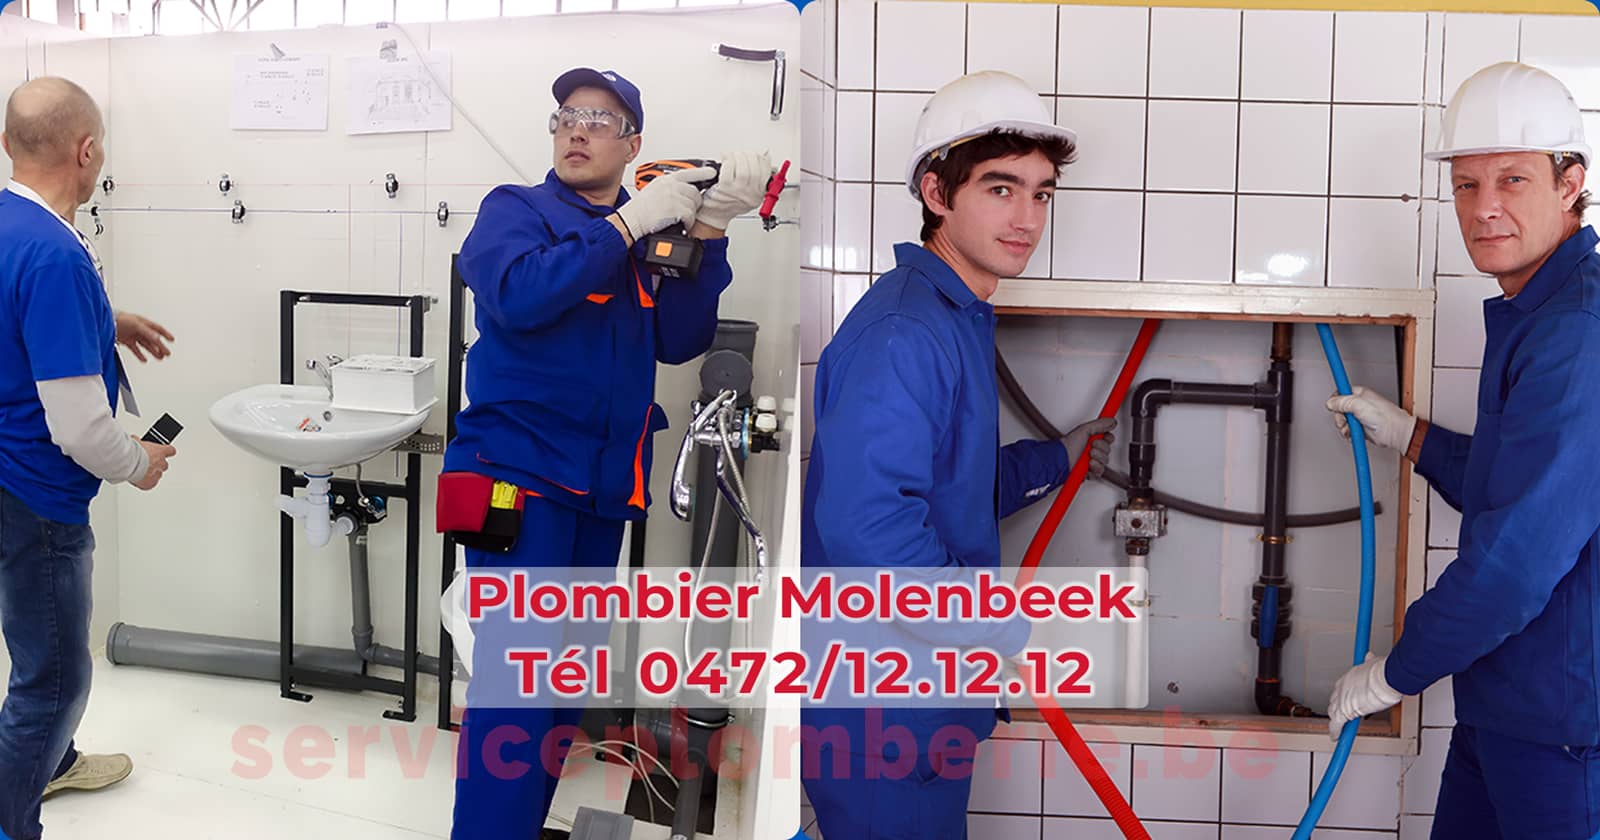 Plombier Molenbeek Agréé Professionnel Service Plomberie Tél 0472/12.12.12